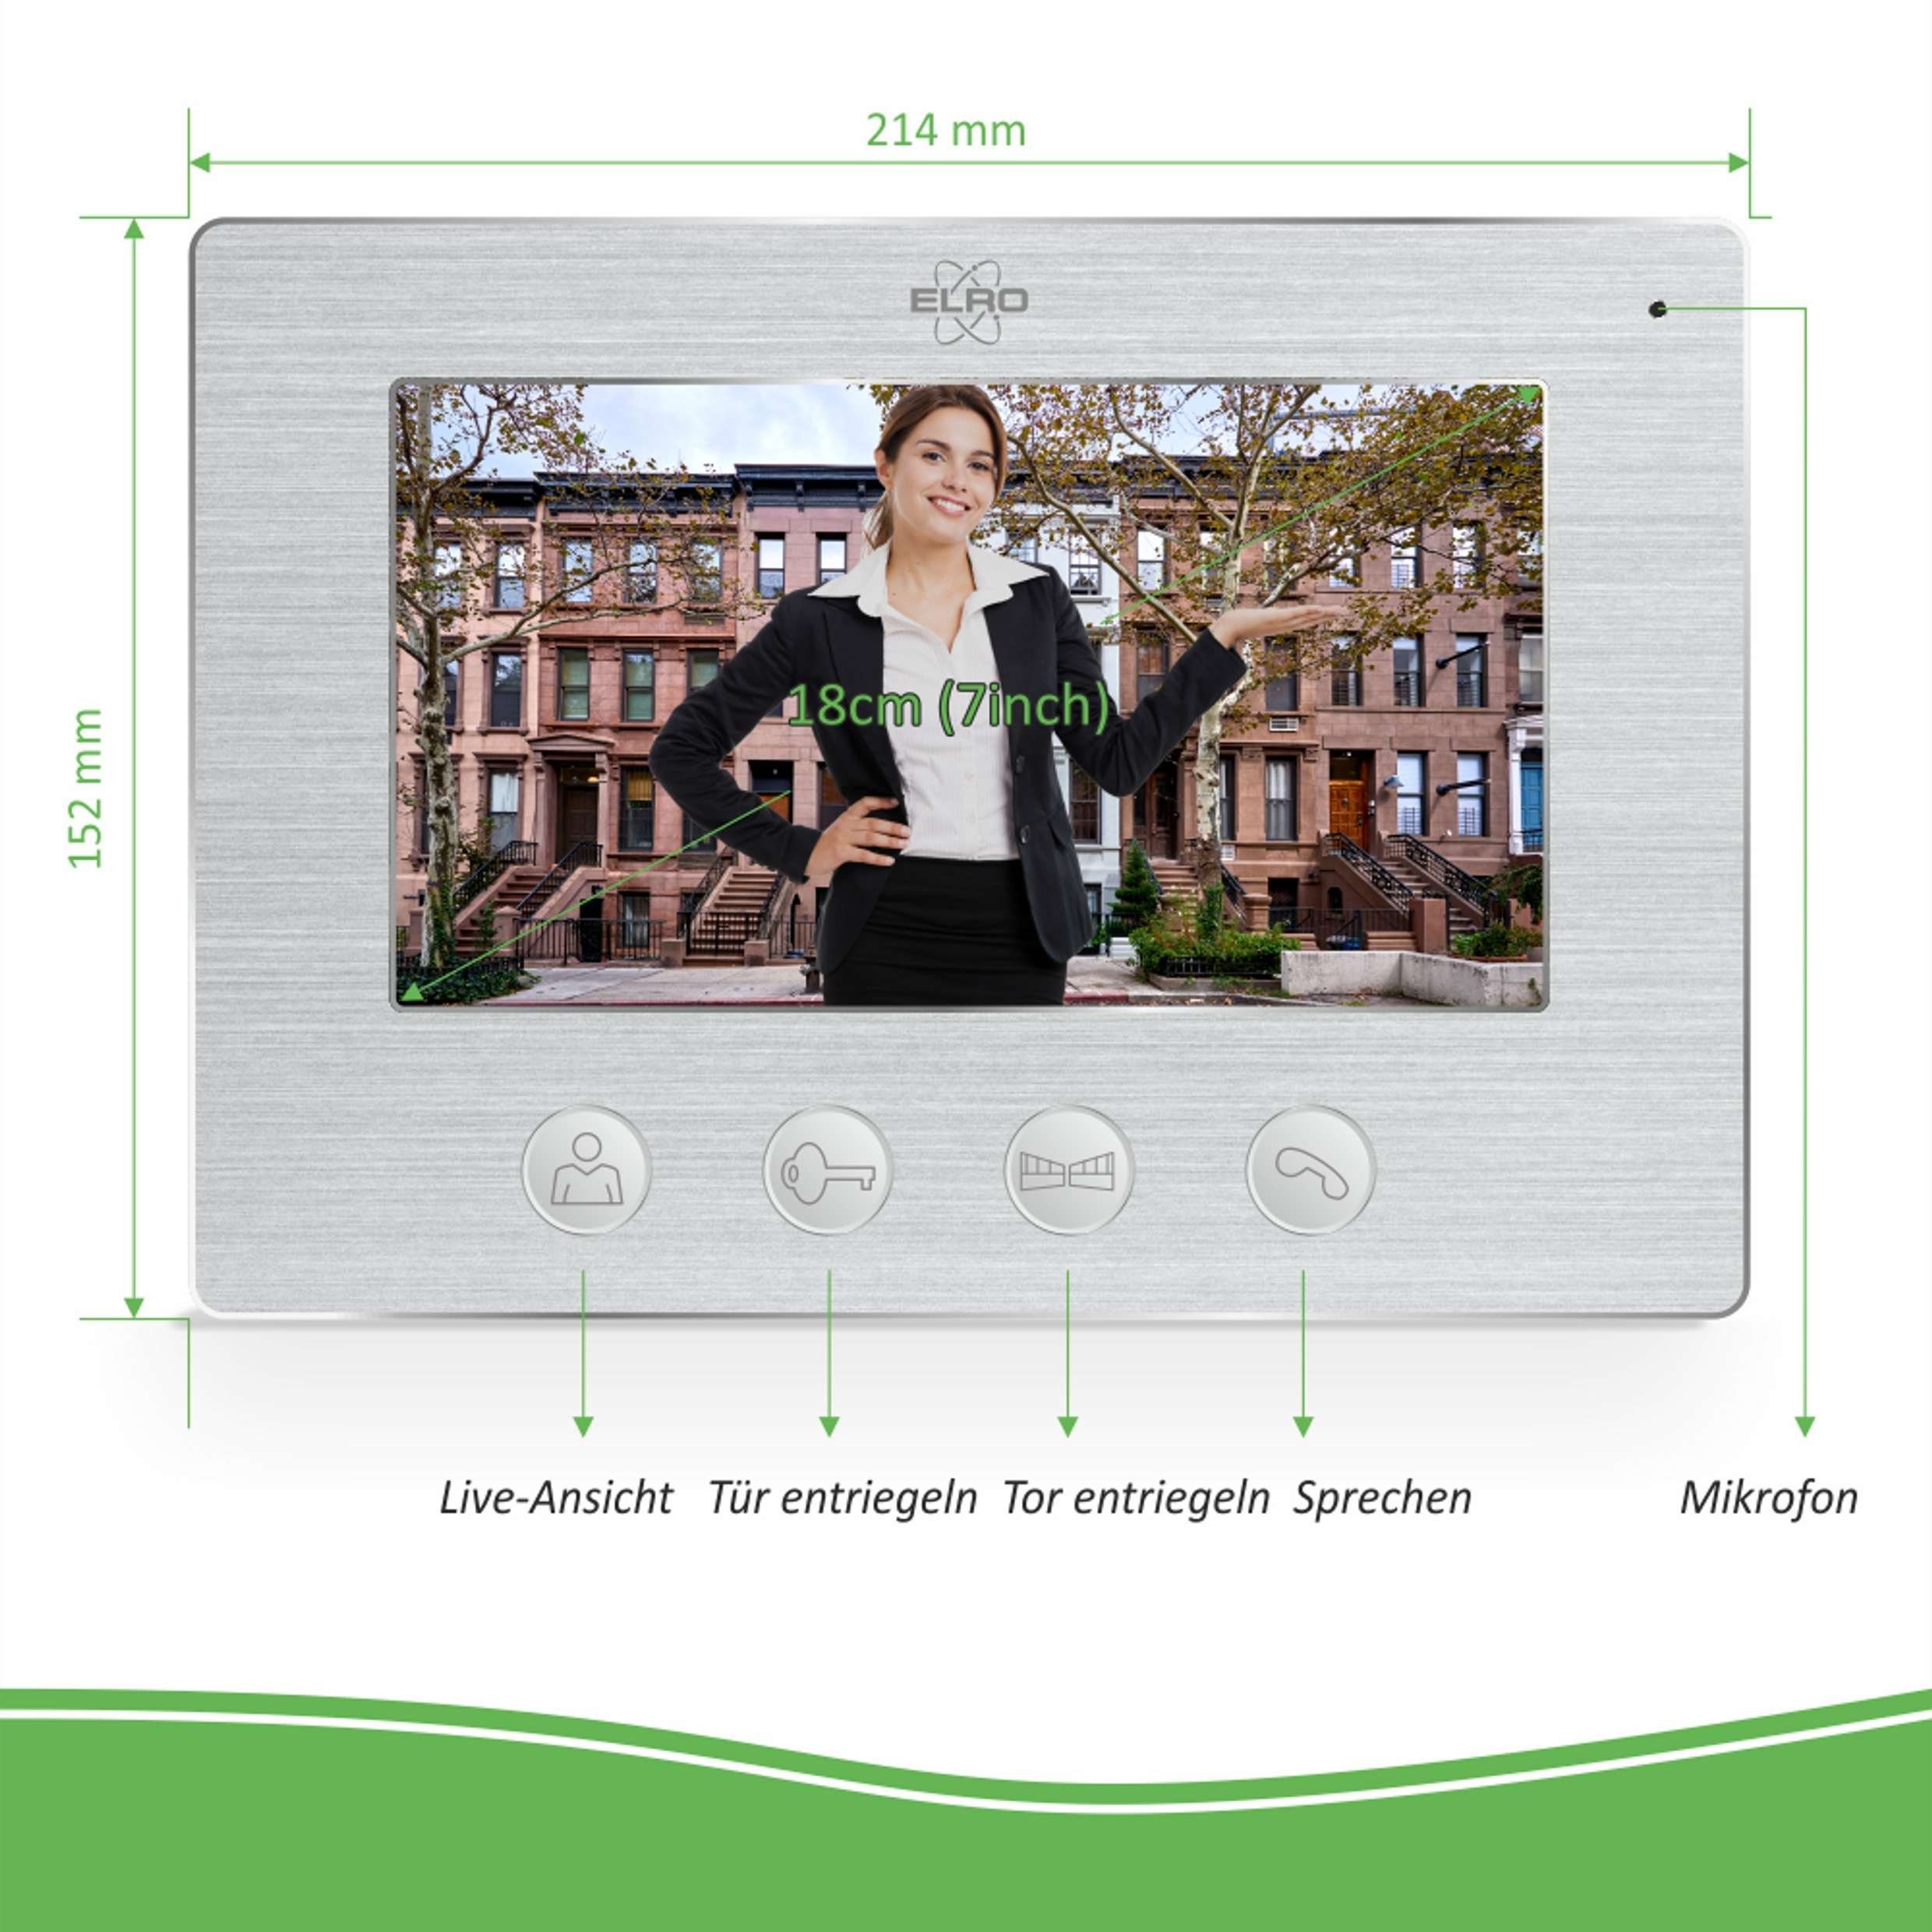 Elro DV477W-M DV477IP-Serie) Türklingel DV477W Smart Home Monitor Extra (Innenbereich, & für